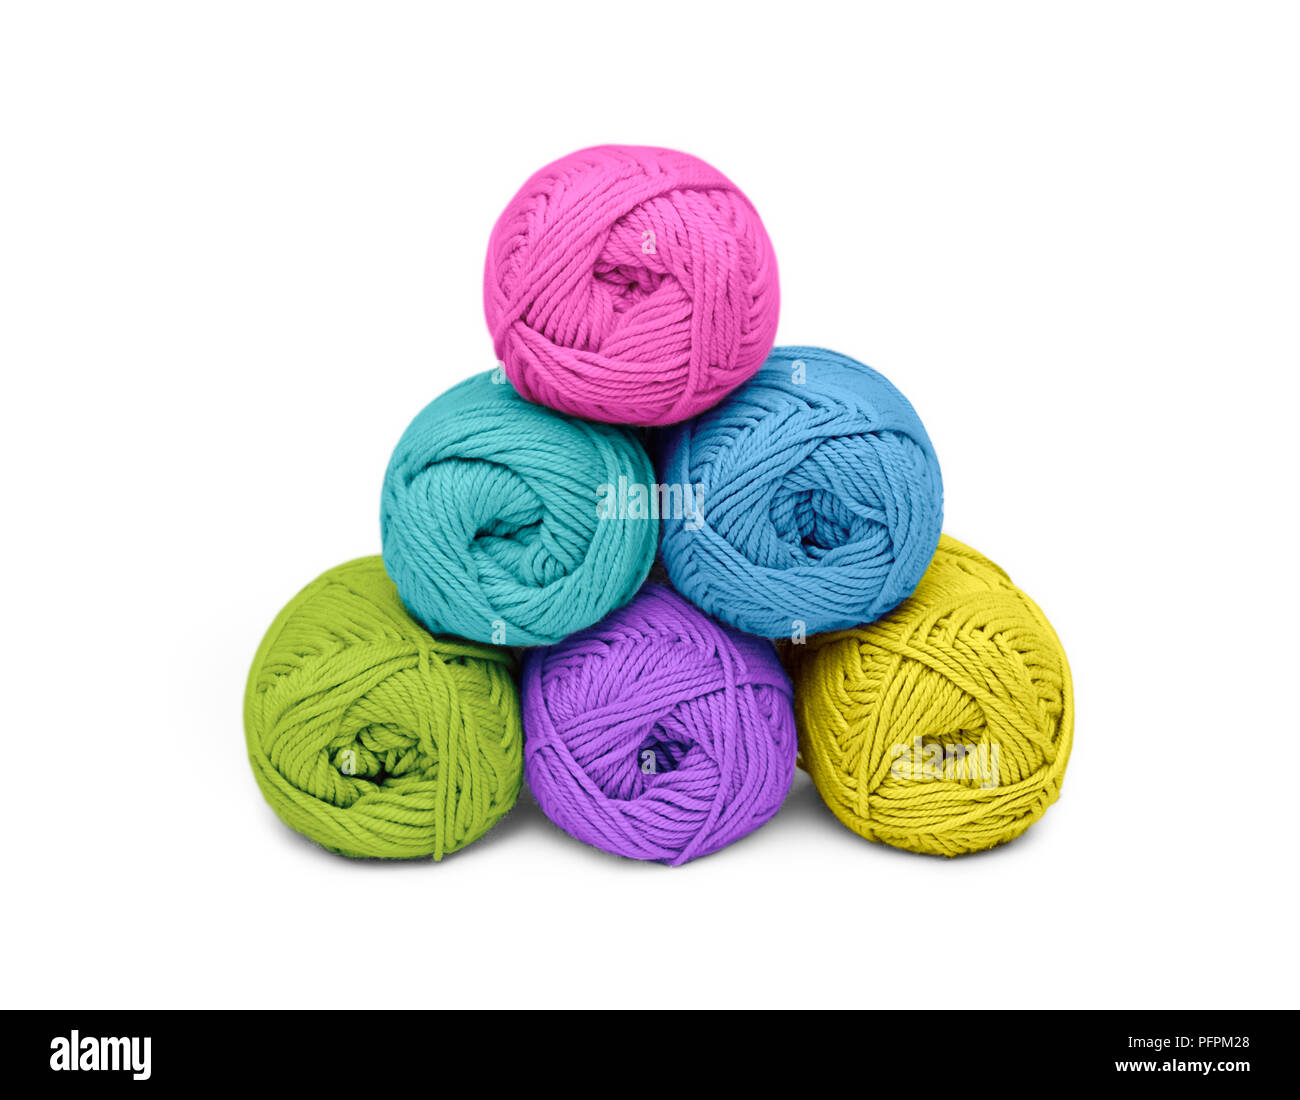 Boules de laine, couleurs vives Banque D'Images